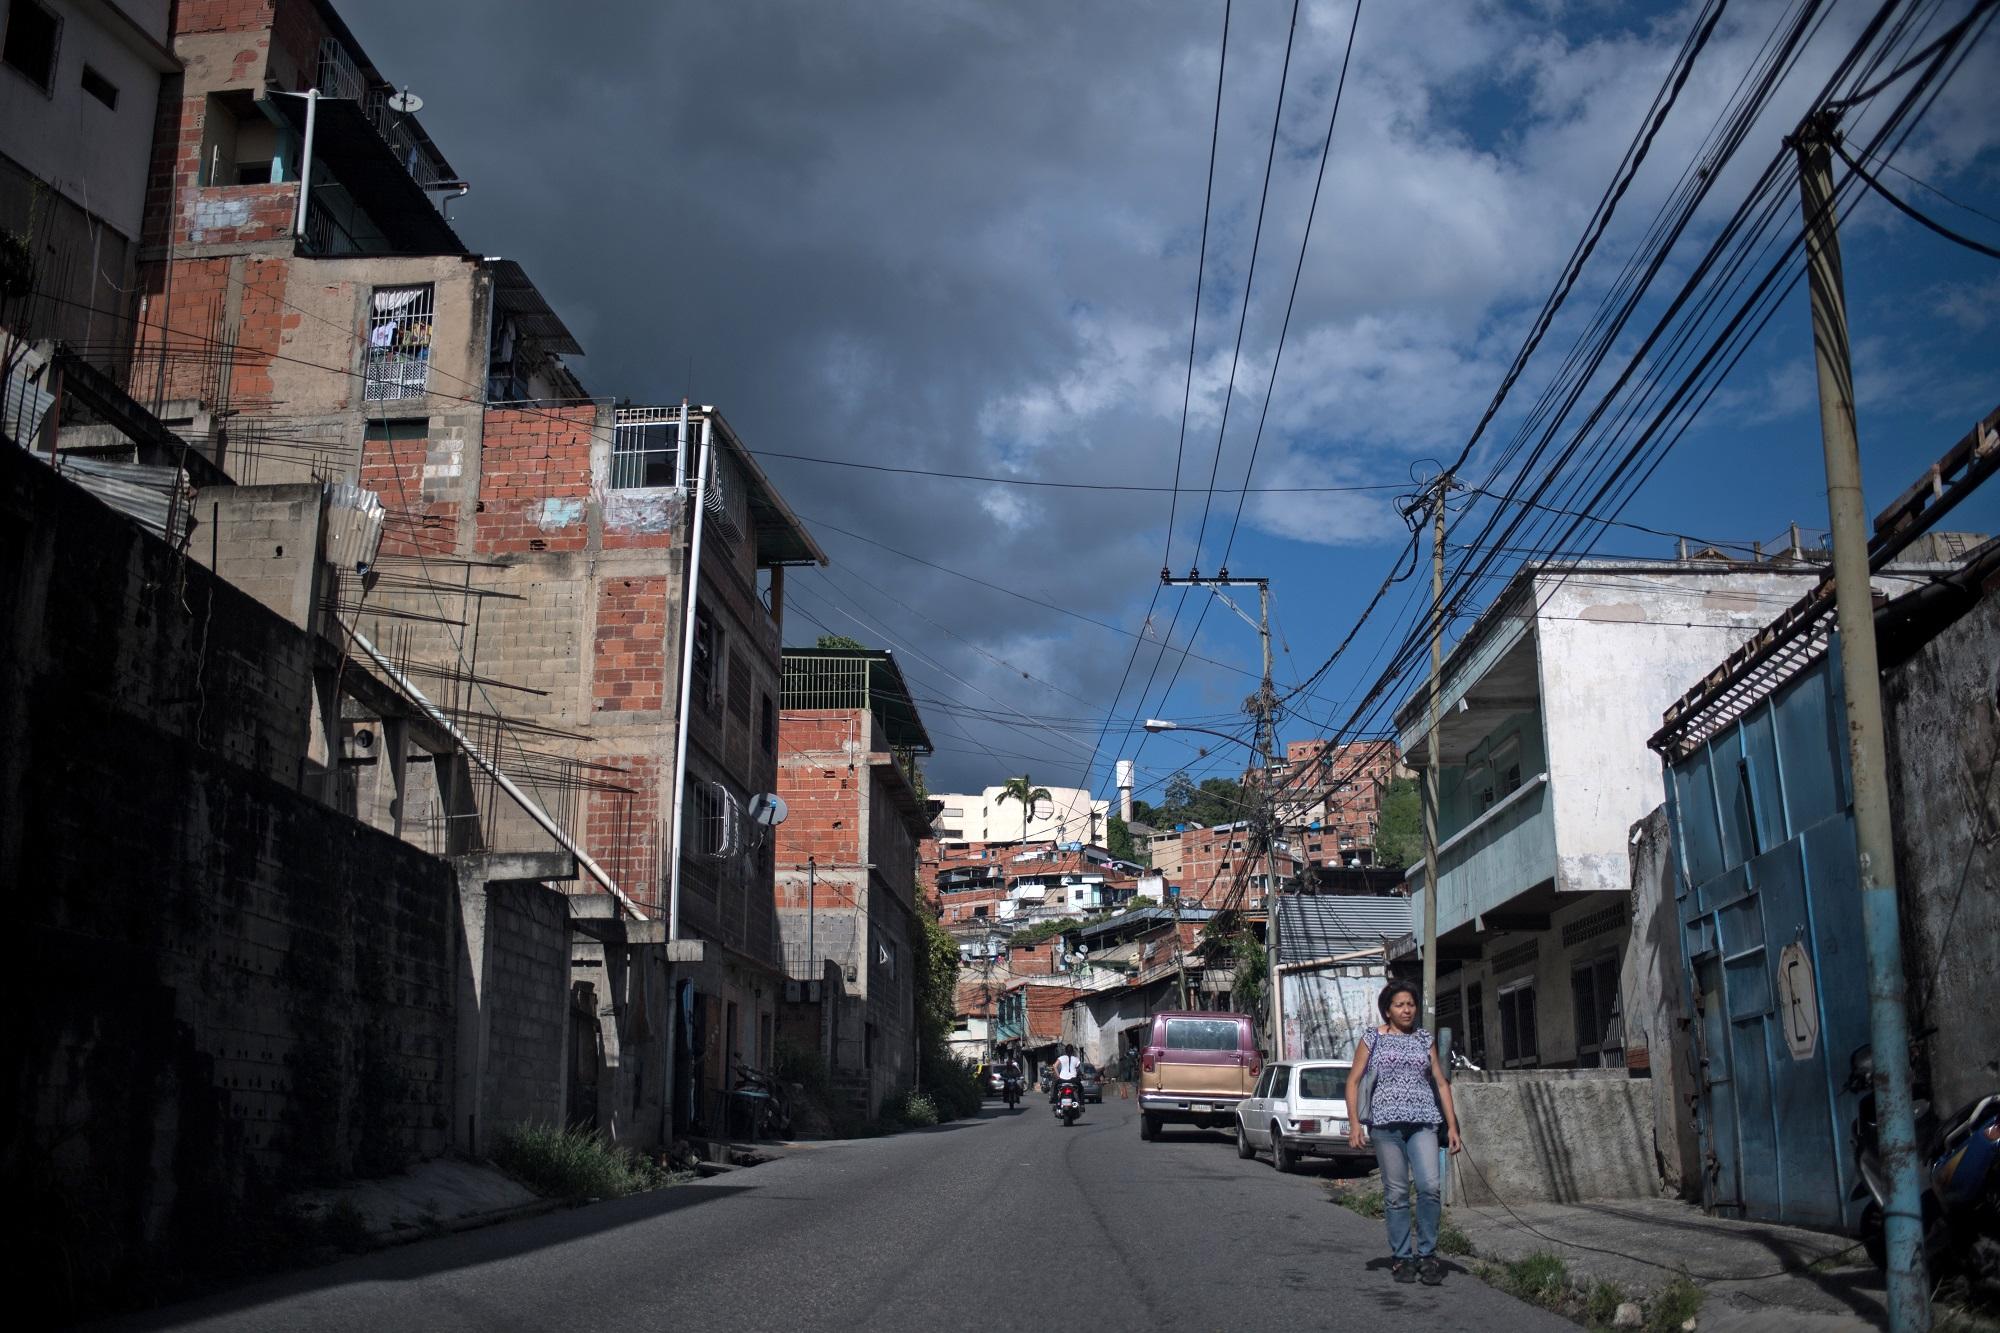 امرأة تسير في شوارع حي بيتاري في كاراكاس في وقت تشهد فيه فنزويلا أزمة سببها هجرة ترك الآباء أطفالهم لتأمين تكاليف معيشتهم. 9 أغسطس 2019. (أ ف ب)